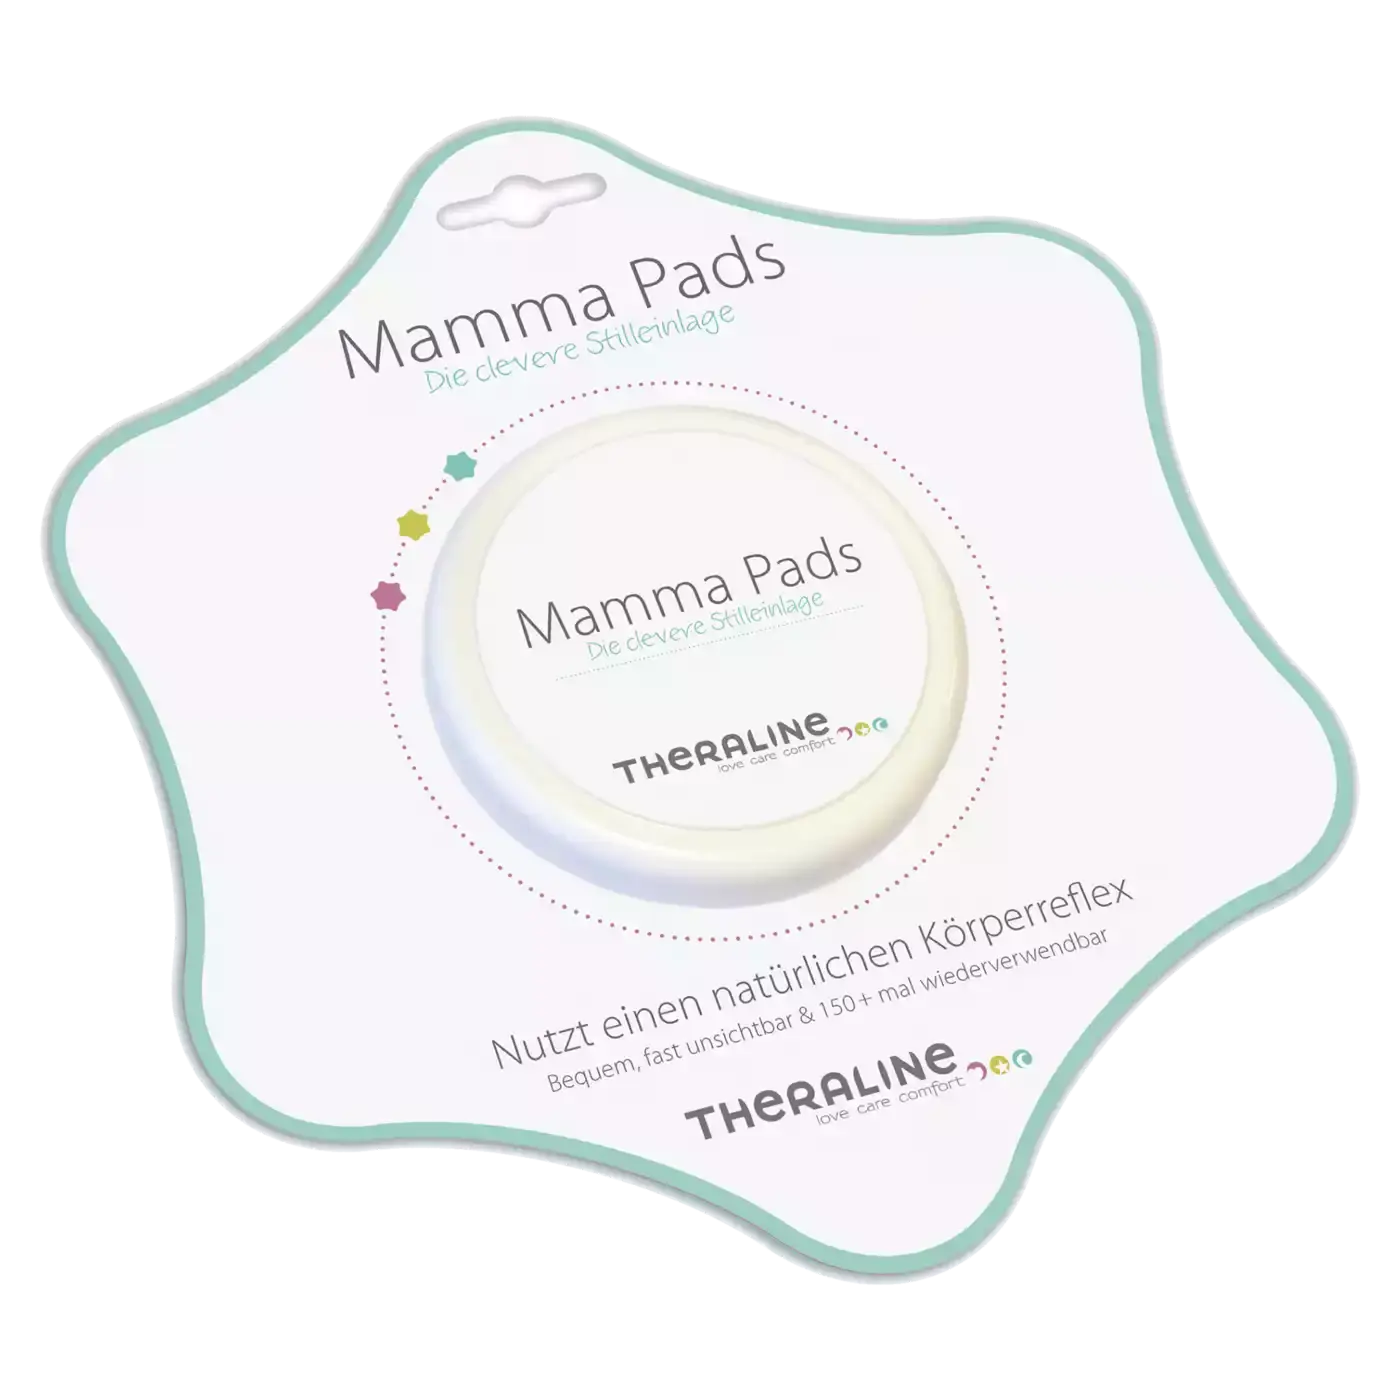 Mamma Pads - Silikonstilleinlage THERALINE Weiß Transparent 2000537335505 1